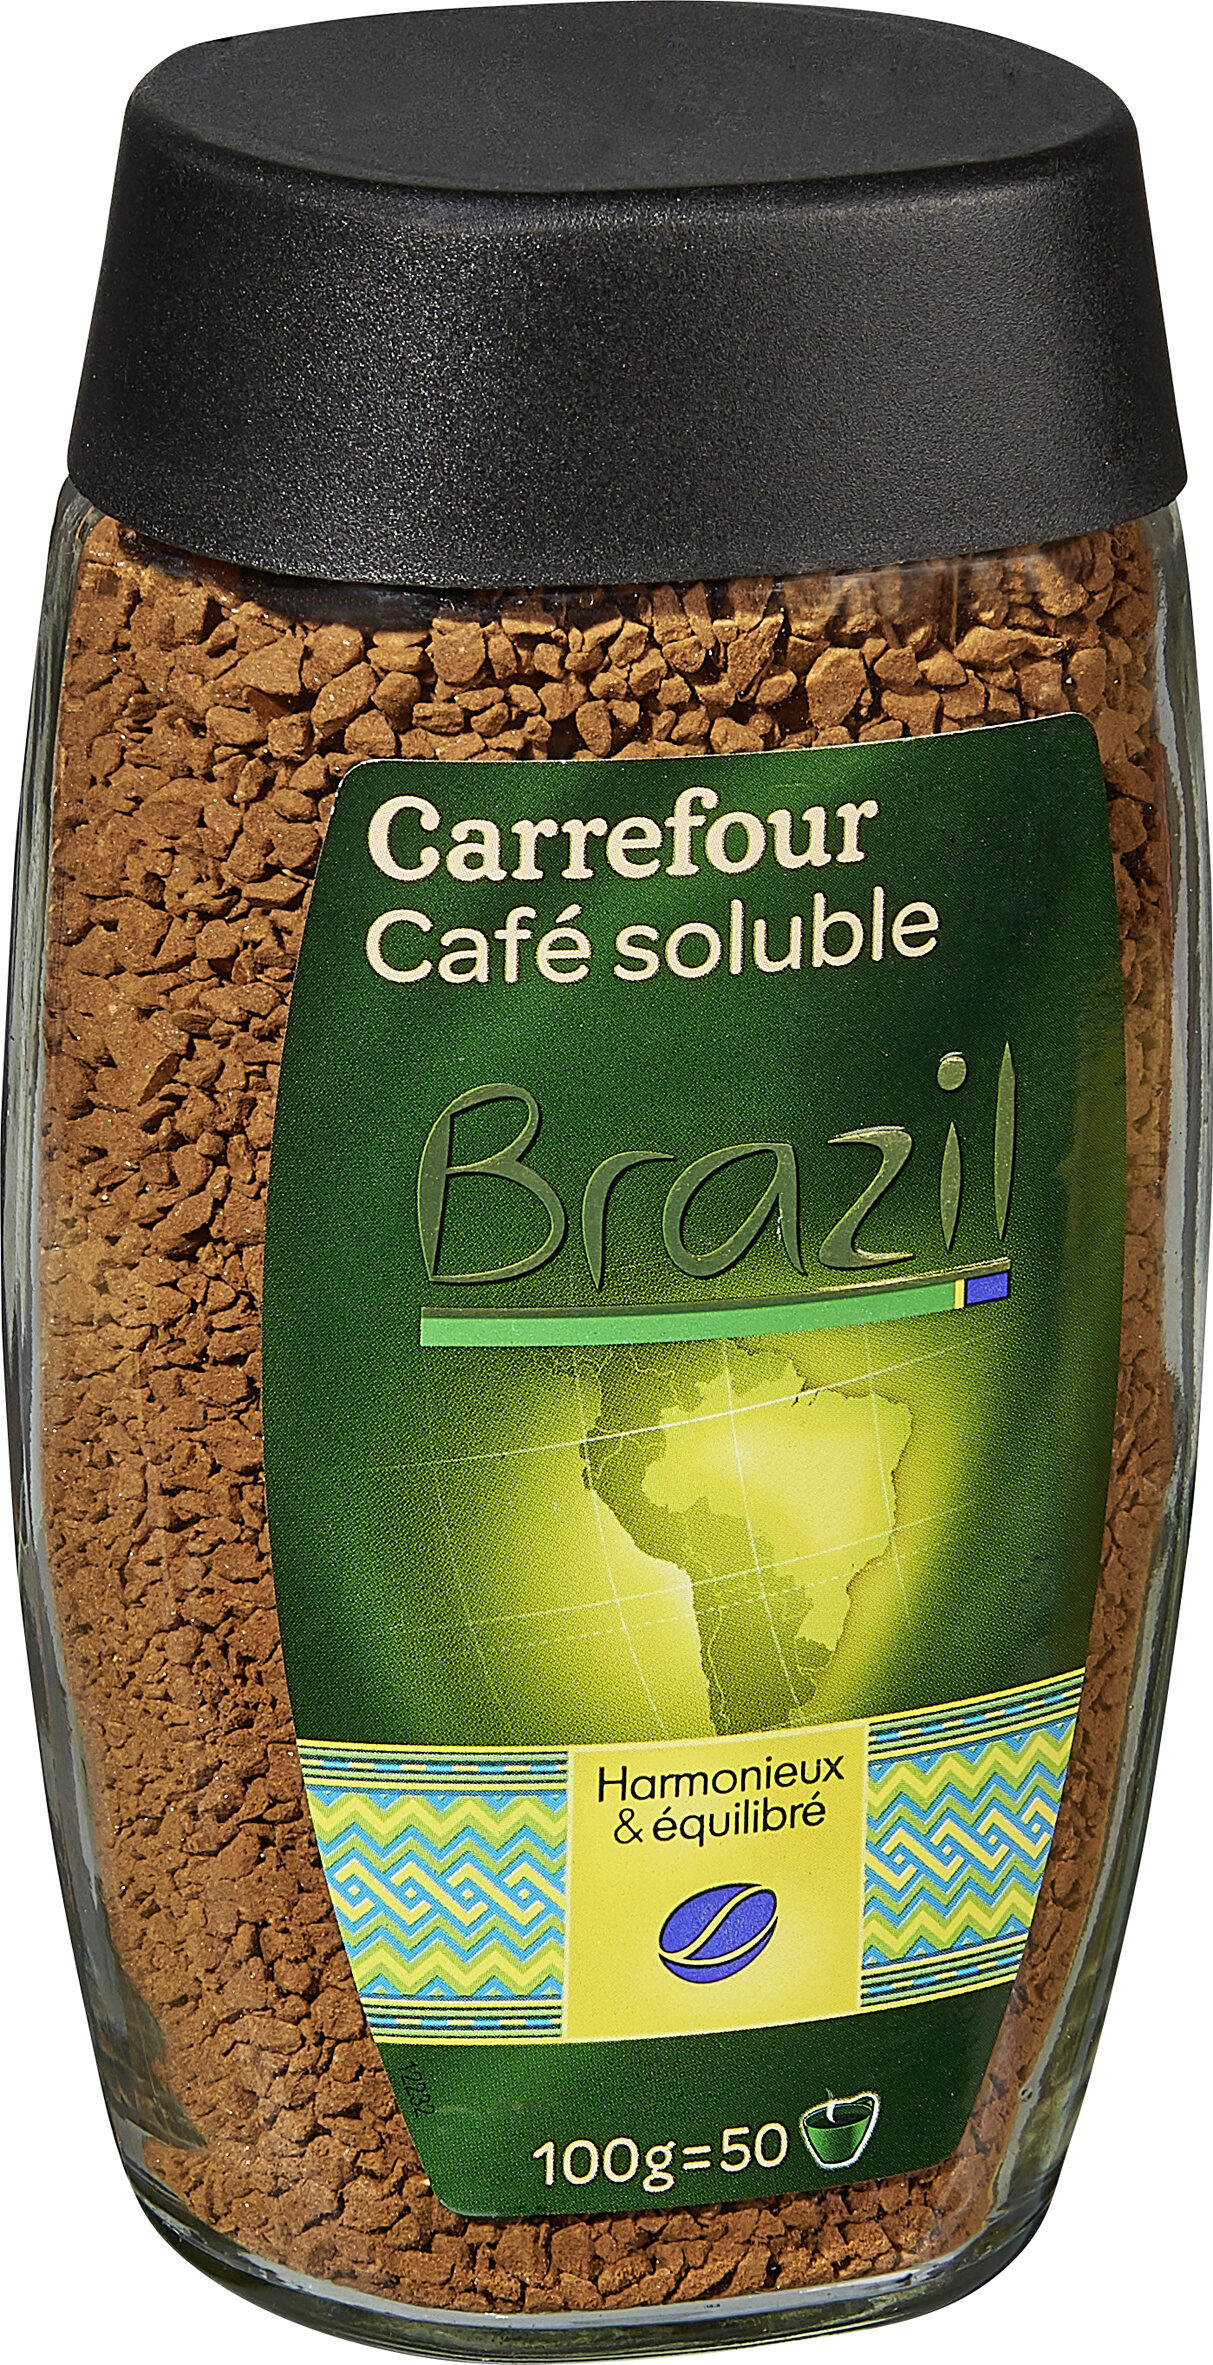 Café soluble brazil - Producte - es